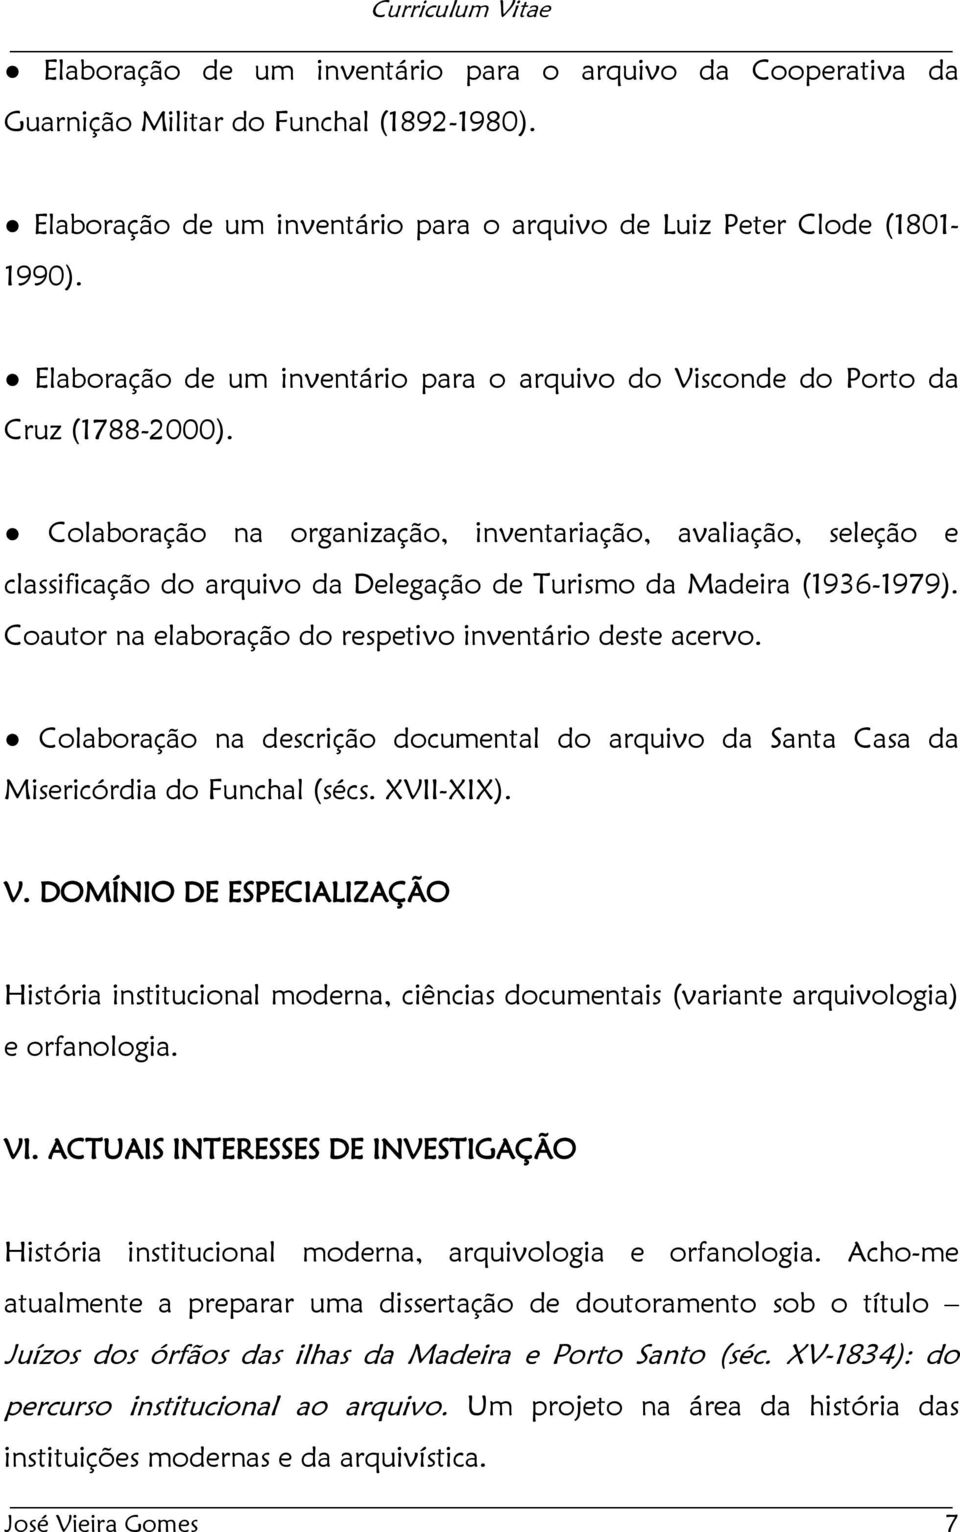 Colaboração na organização, inventariação, avaliação, seleção e classificação do arquivo da Delegação de Turismo da Madeira (1936-1979). Coautor na elaboração do respetivo inventário deste acervo.